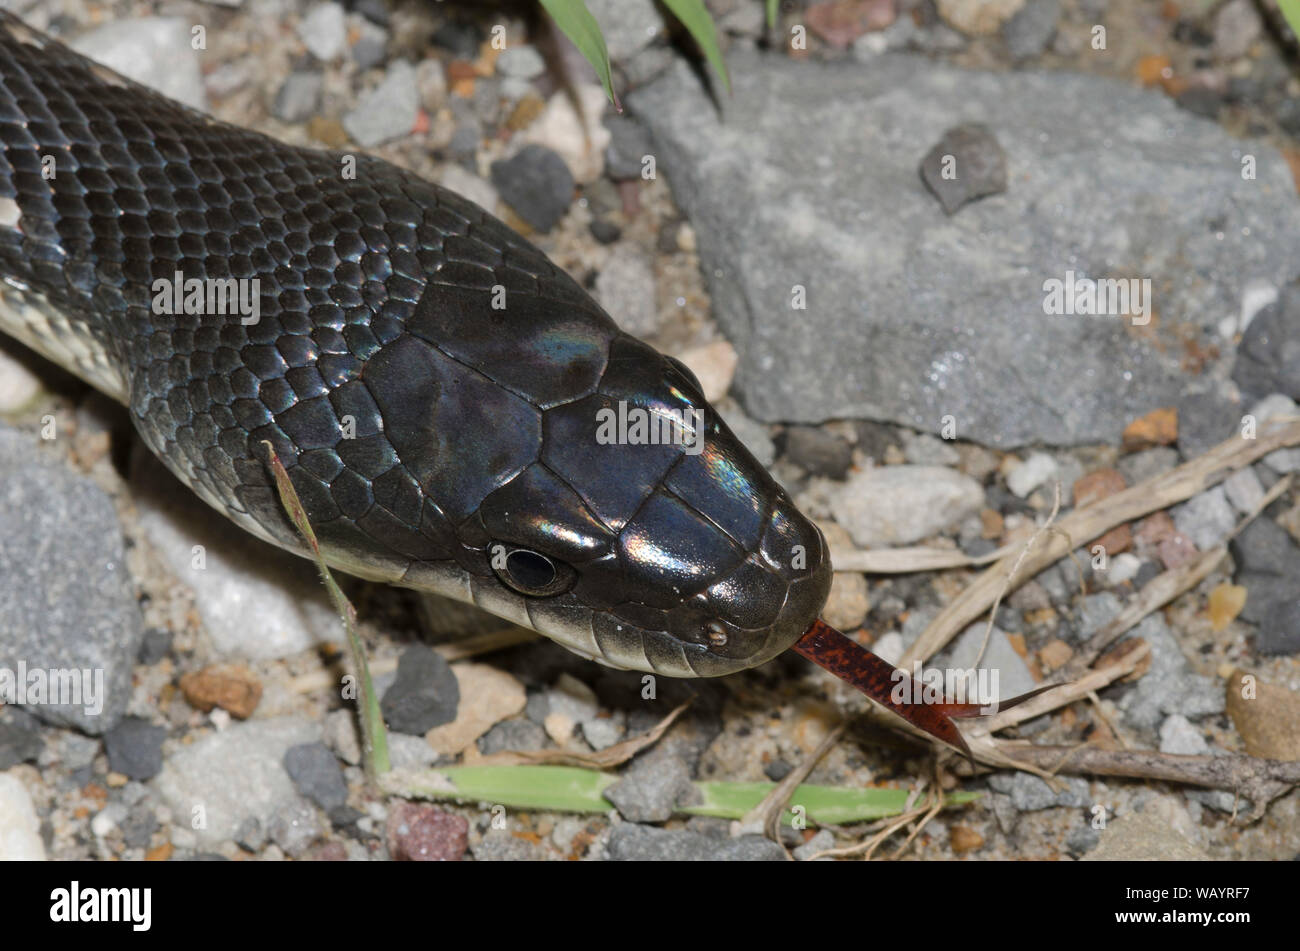 Black Rat Snake, Pantherophis obsoletus Stock Photo